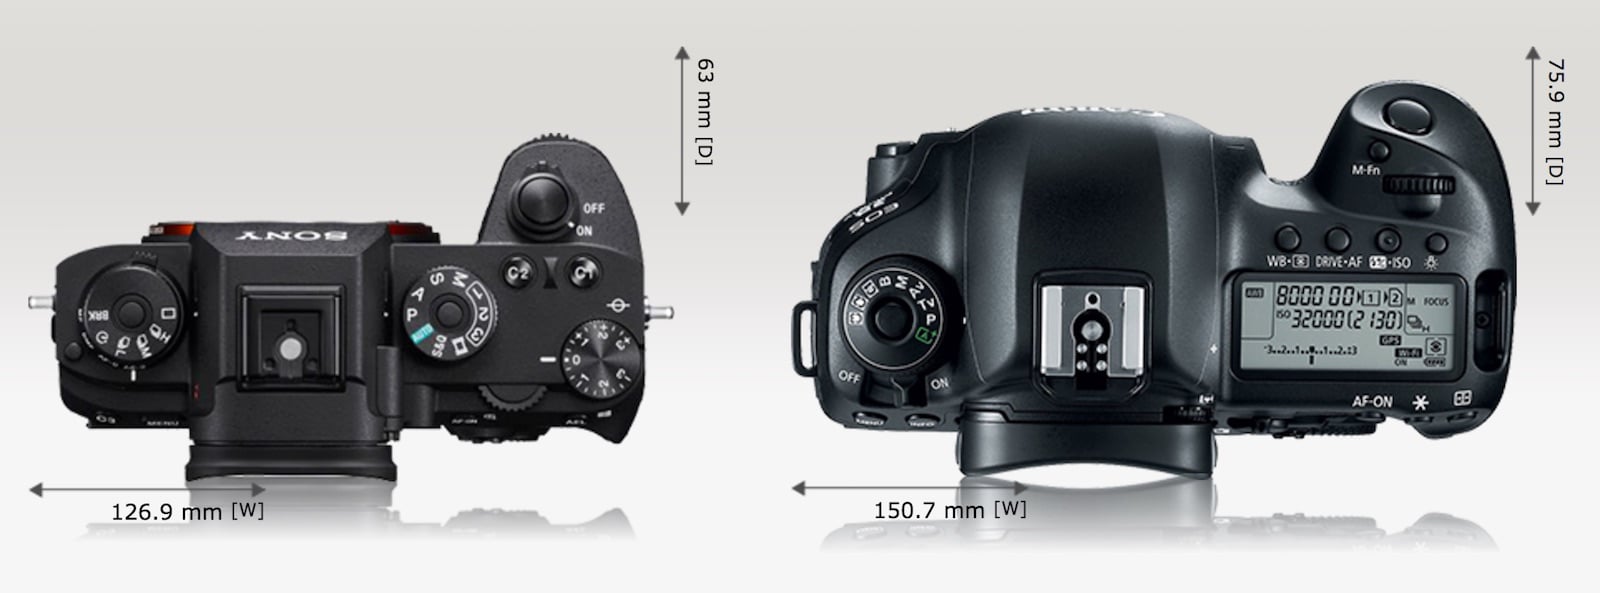 Сравнение canon 5d. Panasonic s5 Mark II. Xt3 vs 5d mark2. Сравнение по размеру без зеркальных камер Canon. Canon r50 и Sony Alfa сравнение размеров.